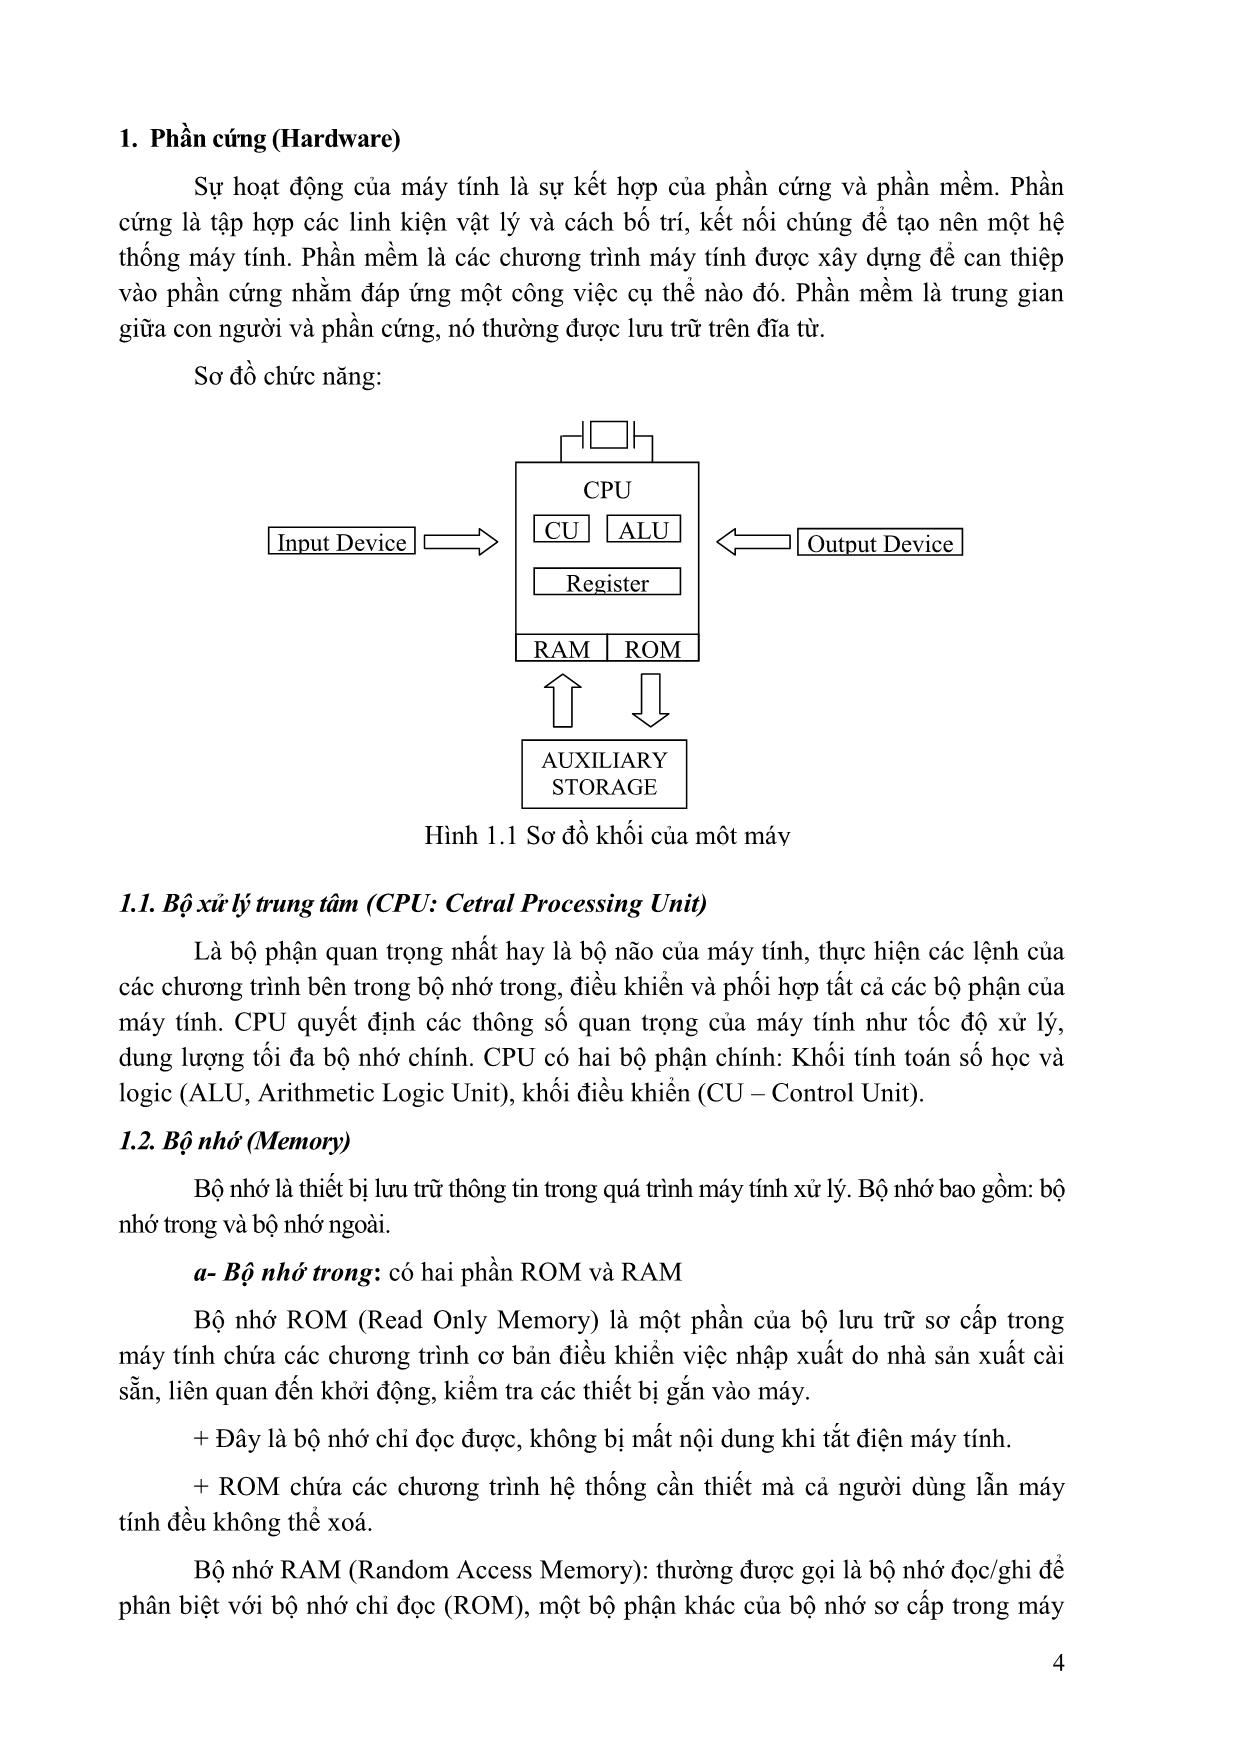 Giáo trình Tin học đại cương (Phần 1) trang 4